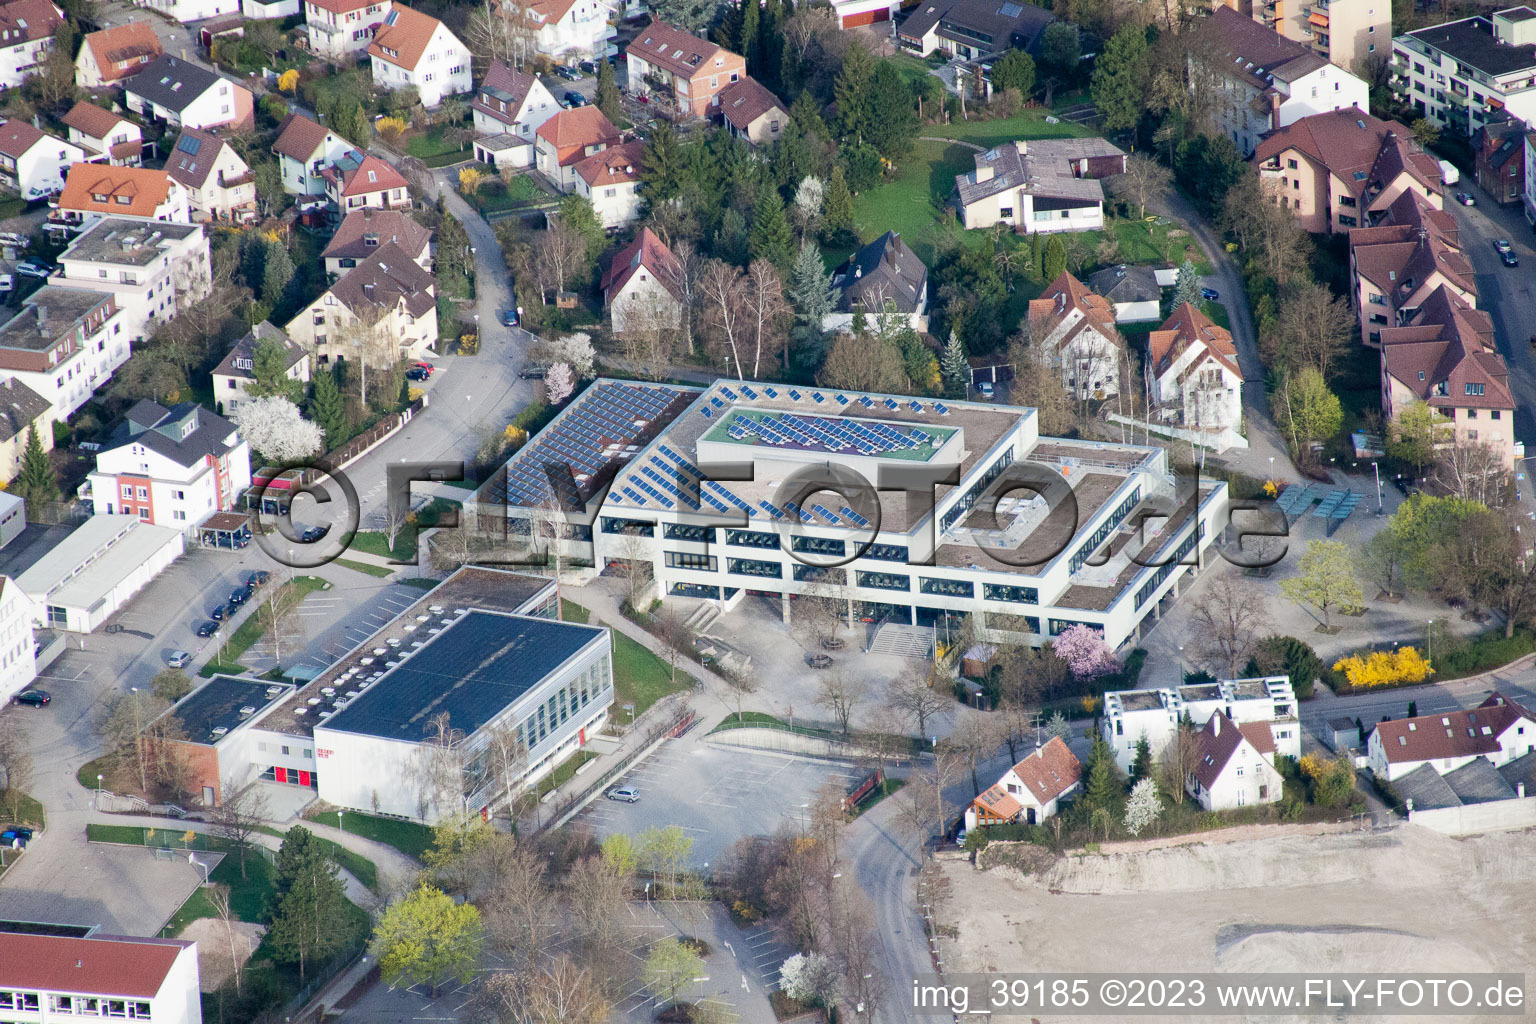 Johannes-Kepler-Gymnasium, Lindenstr in Leonberg im Bundesland Baden-Württemberg, Deutschland von einer Drohne aus